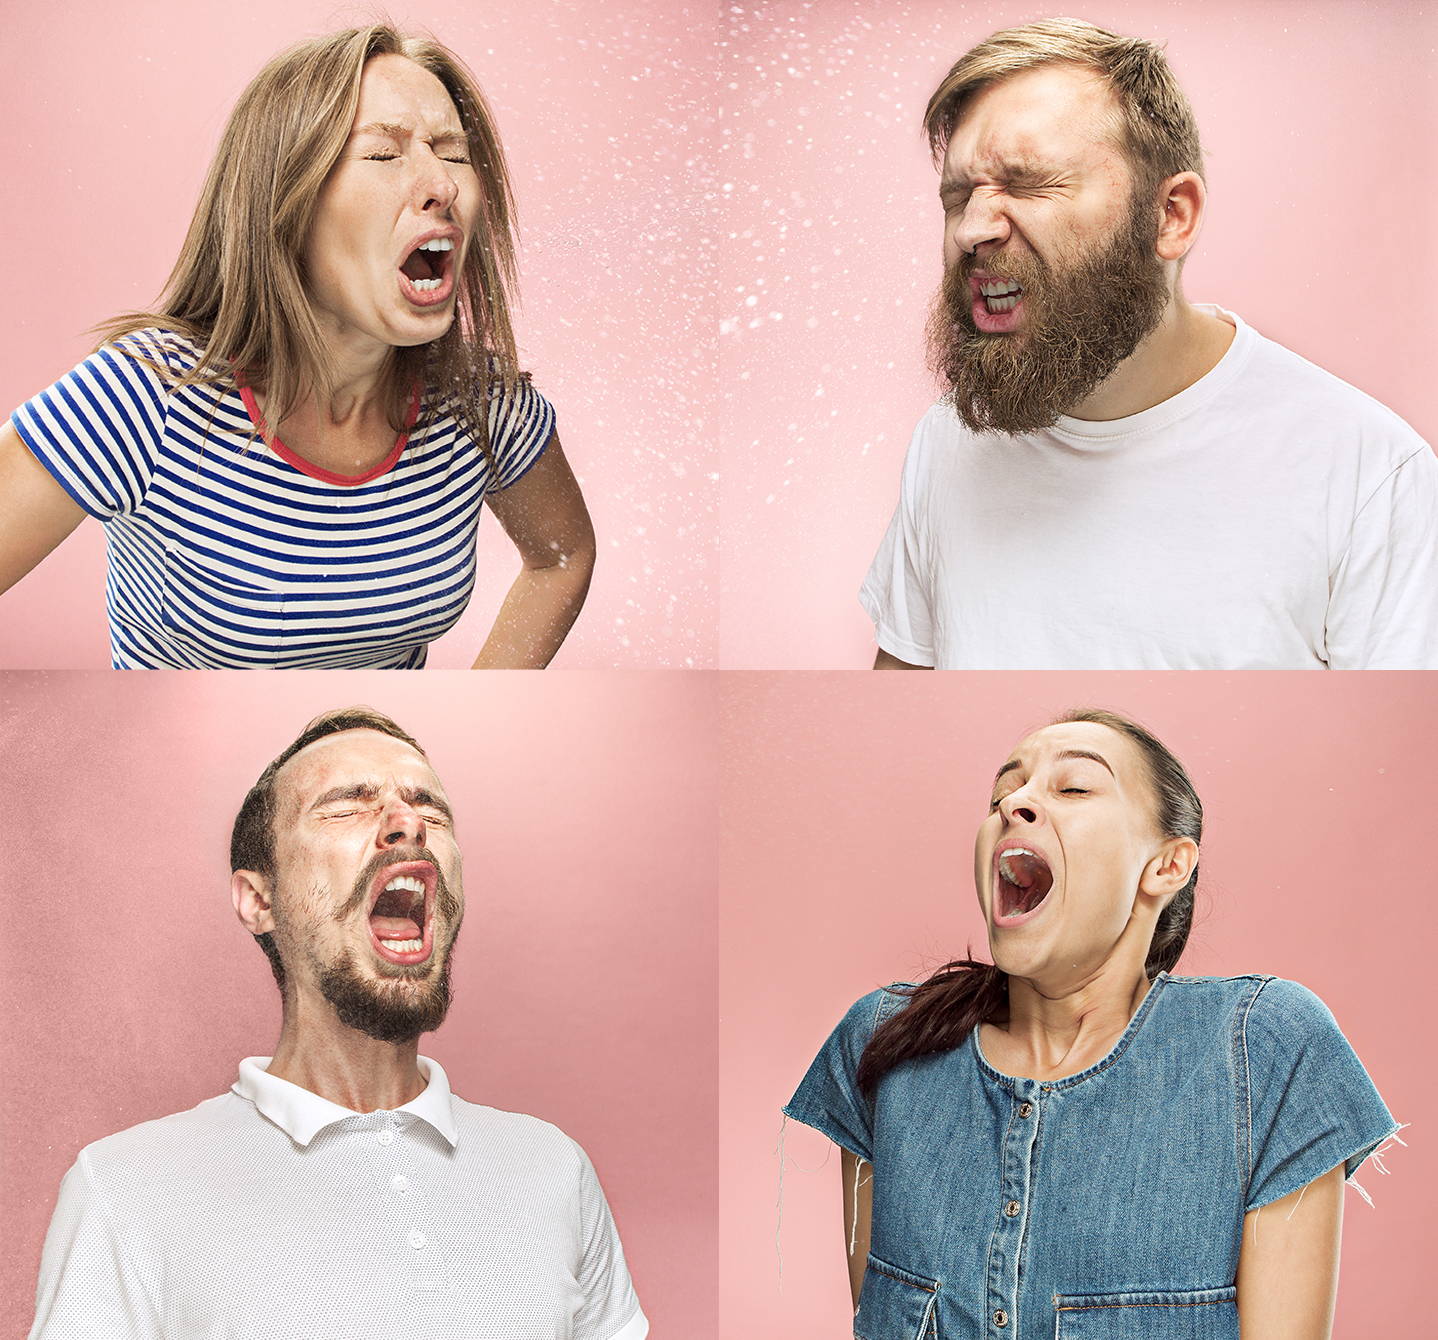 Montage aus vier Bildern von Menschen, die niesen, möglicherweise aufgrund von Allergien. Sie sind alle mitten in einem lauten „HAT-SCHI!“.